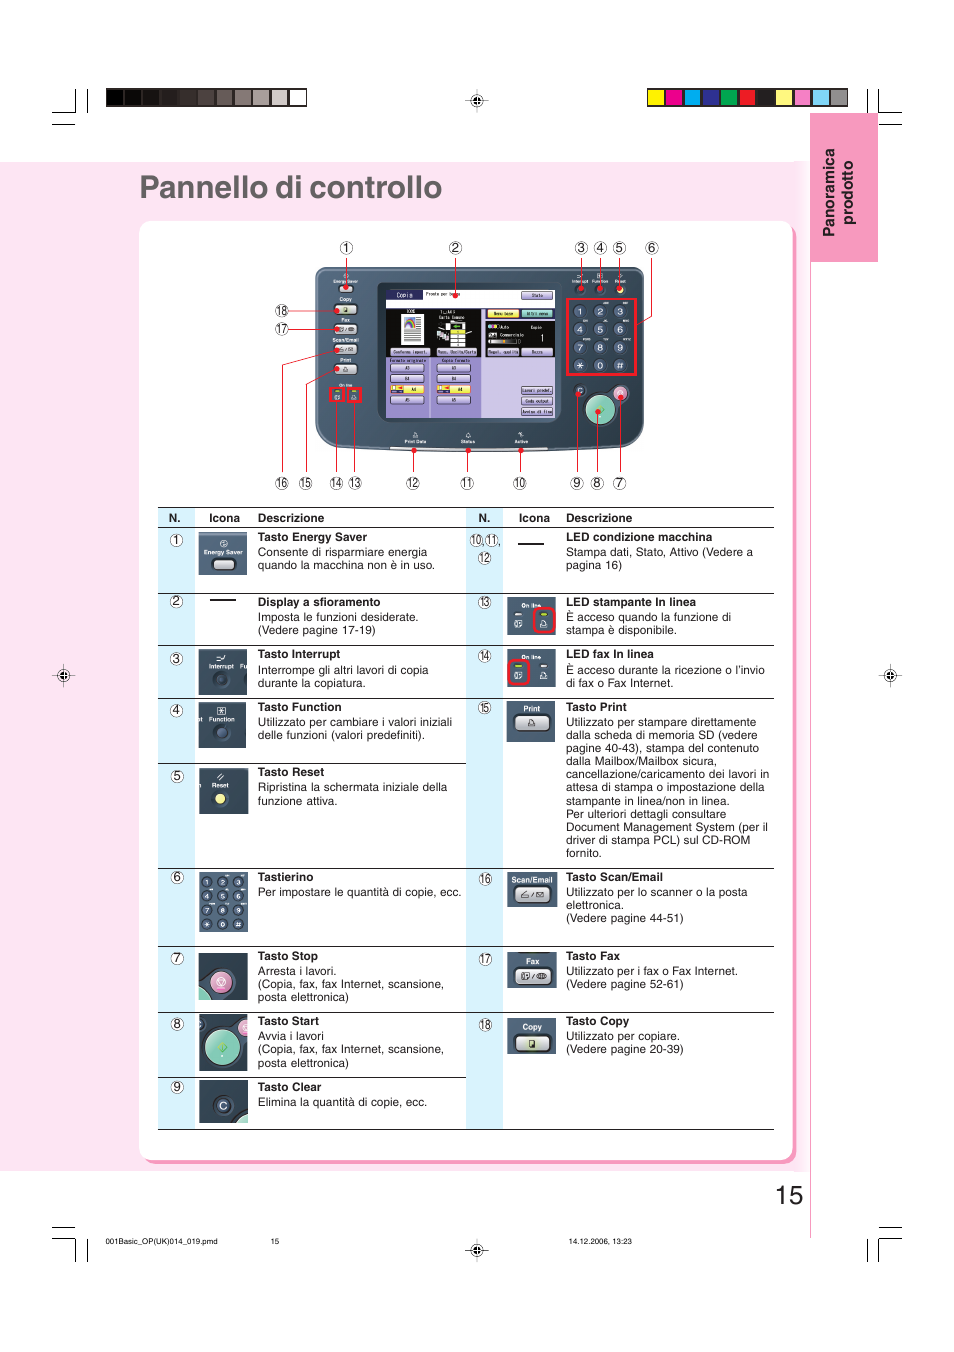 Pannello di controllo | Panasonic DPC213 Manuale d'uso | Pagina 15 / 112